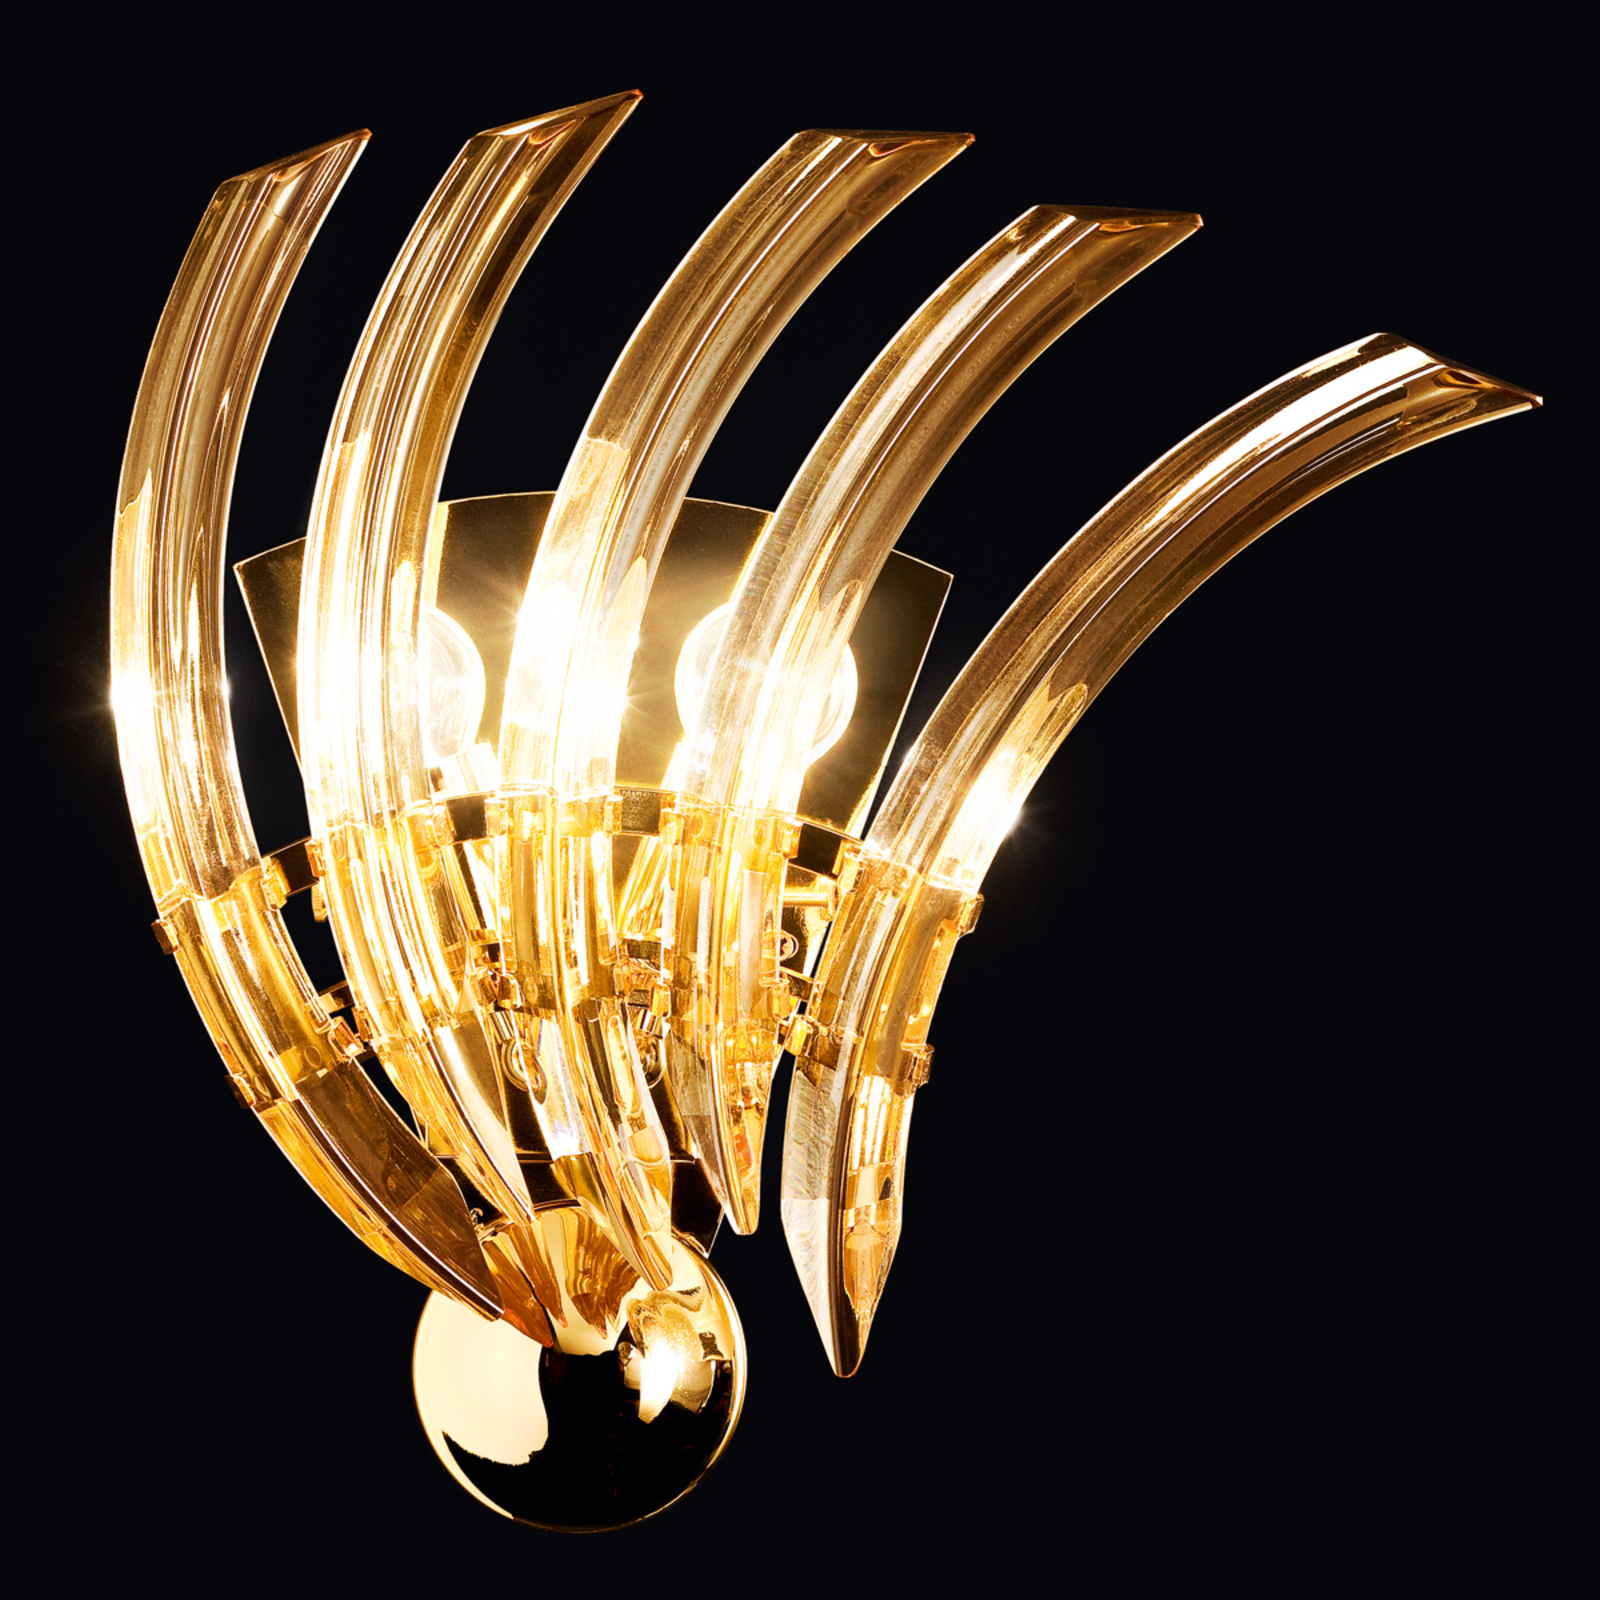 Vägglampa (RONDO) av bärnstensfärgat Muranoglas